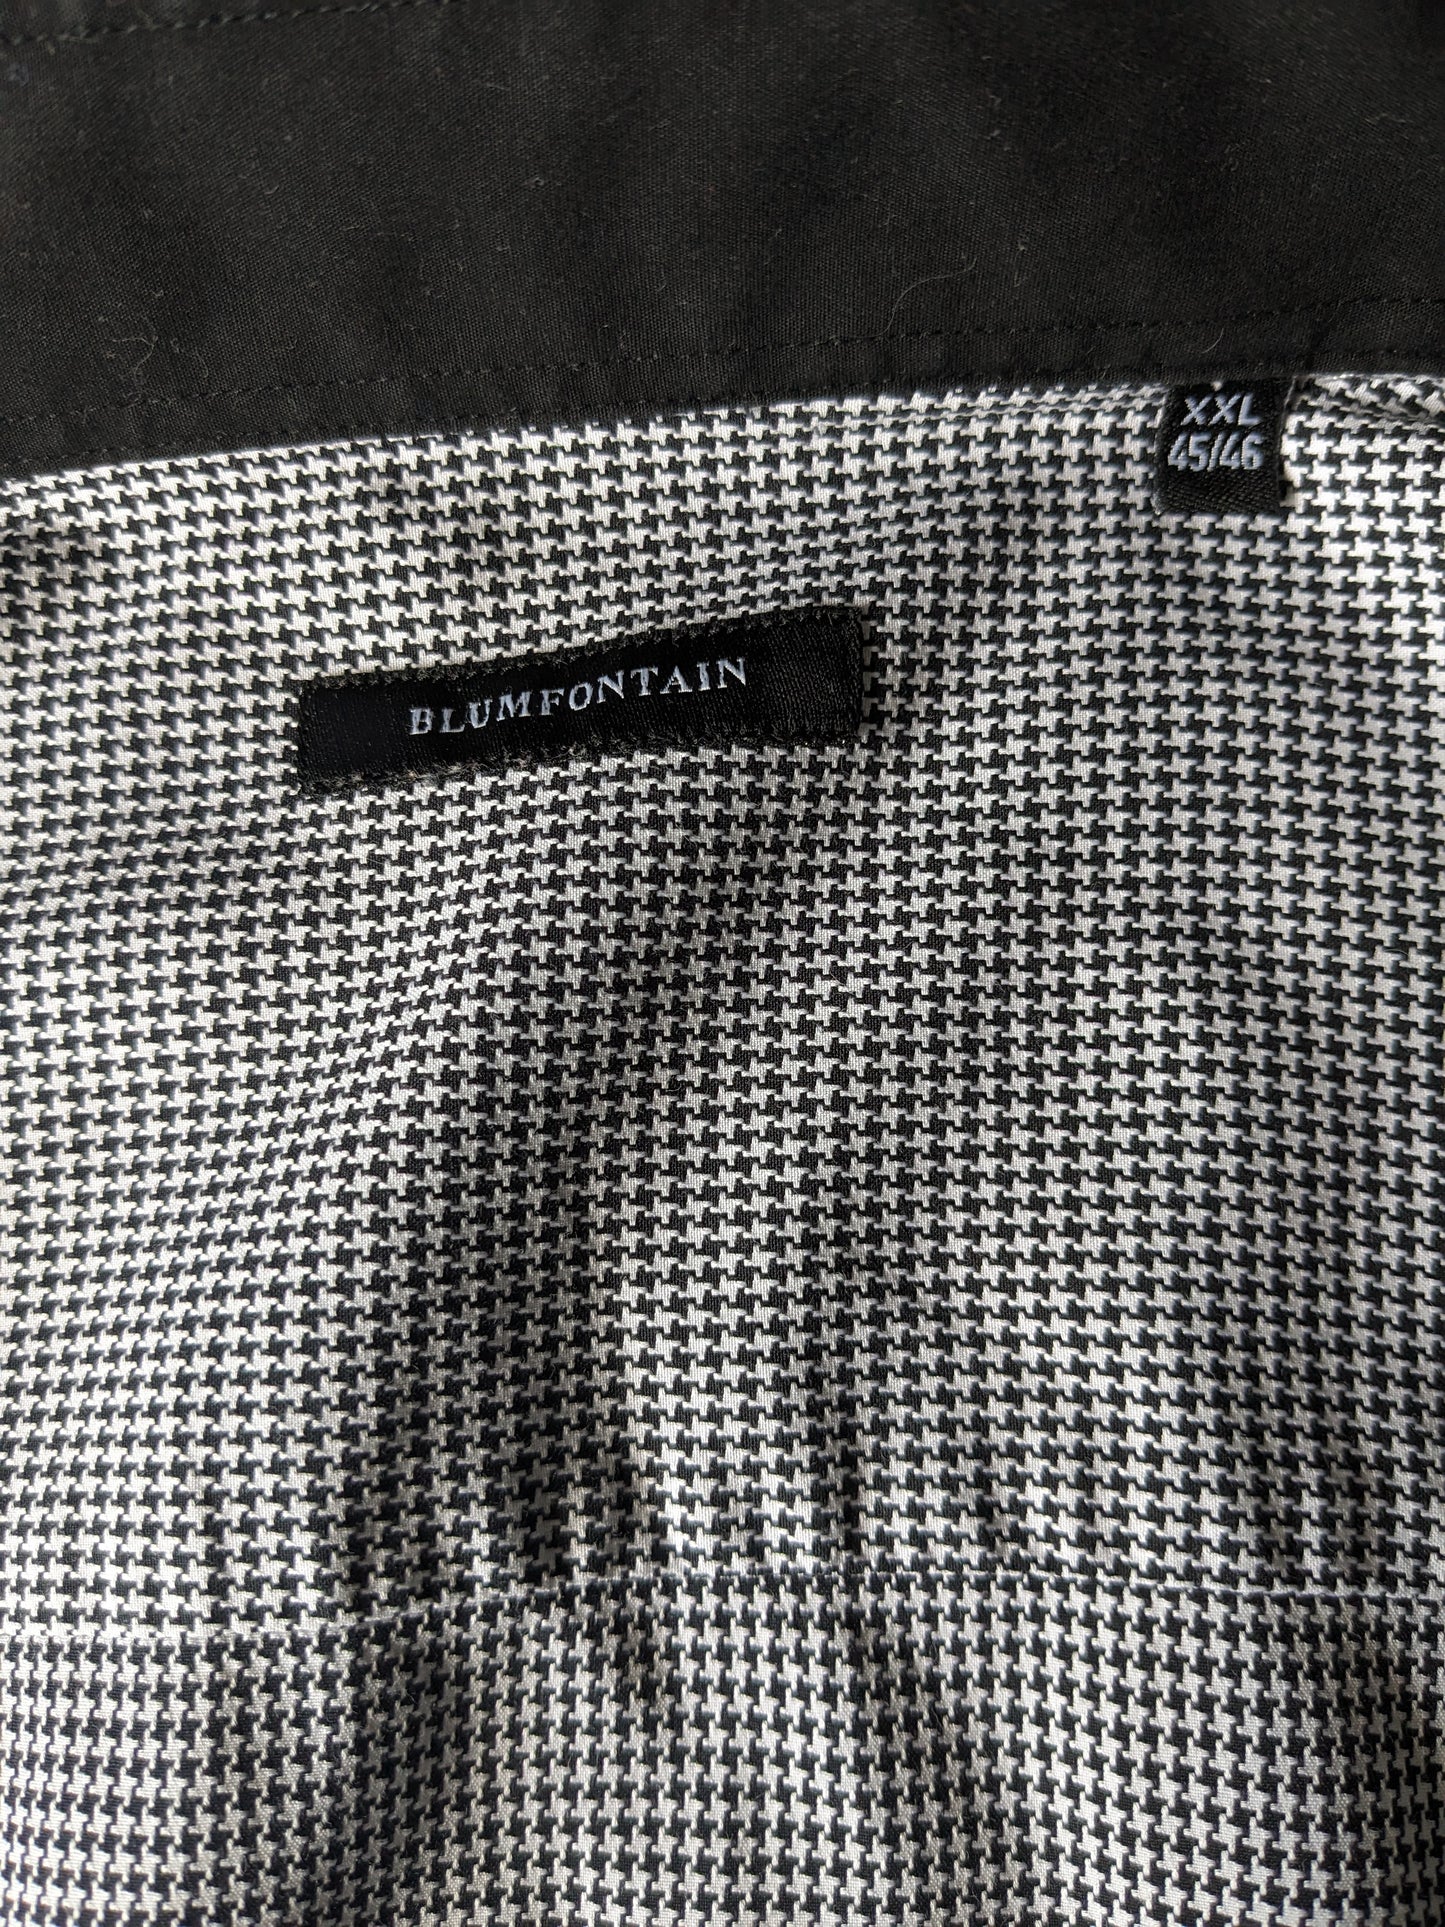 Chemise Blumfontain avec plaques de coude. Motif noir et blanc. Taille 2xl / xxl.